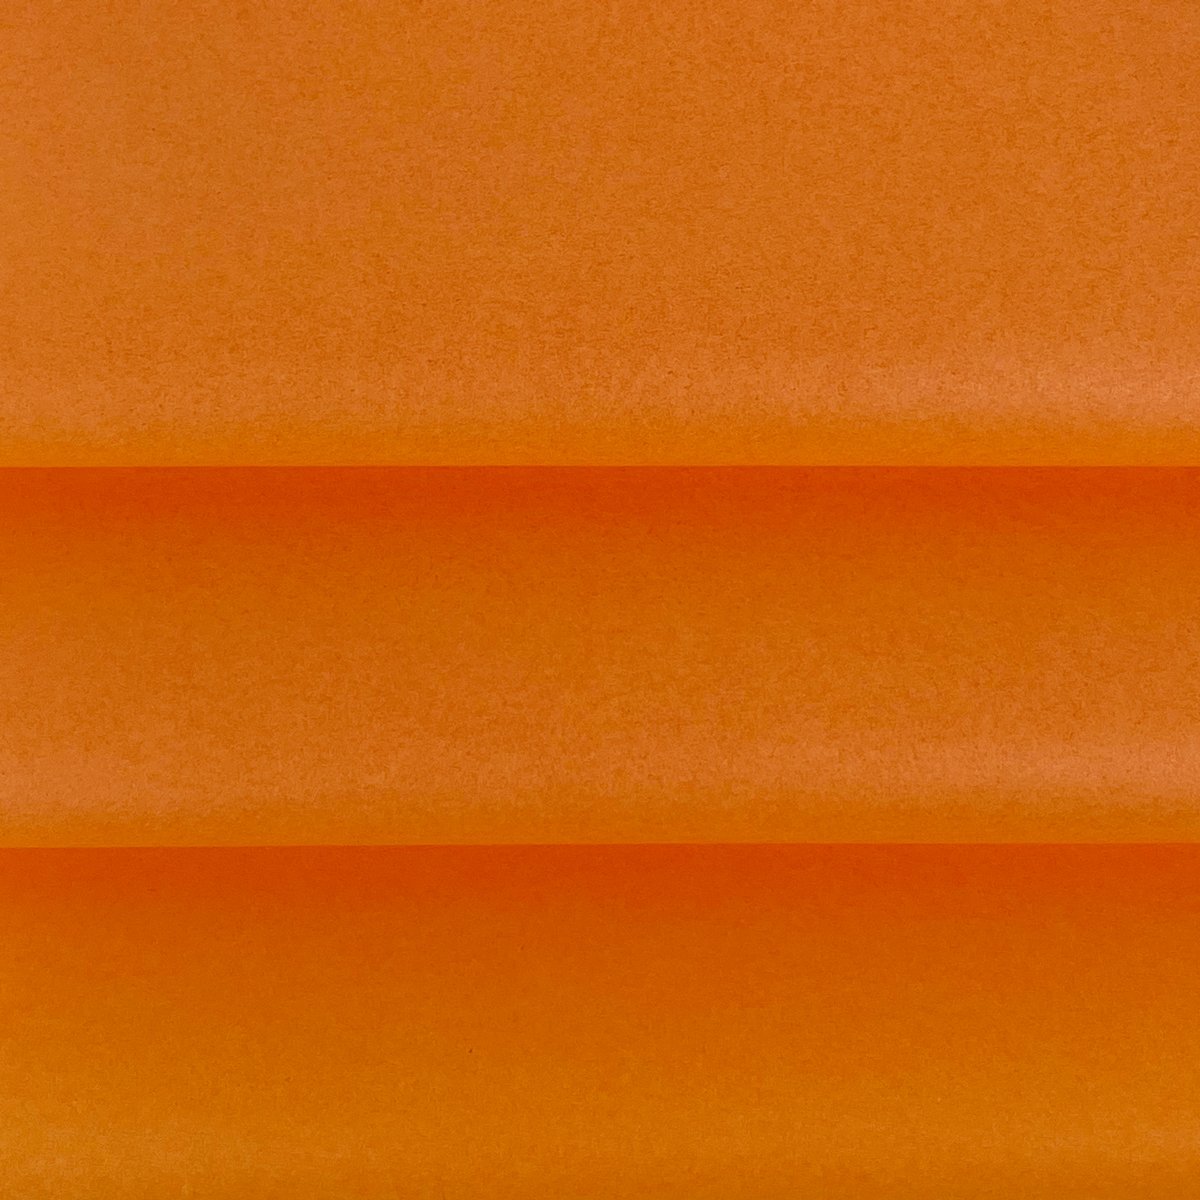 Vloeipapier kleur Oranje